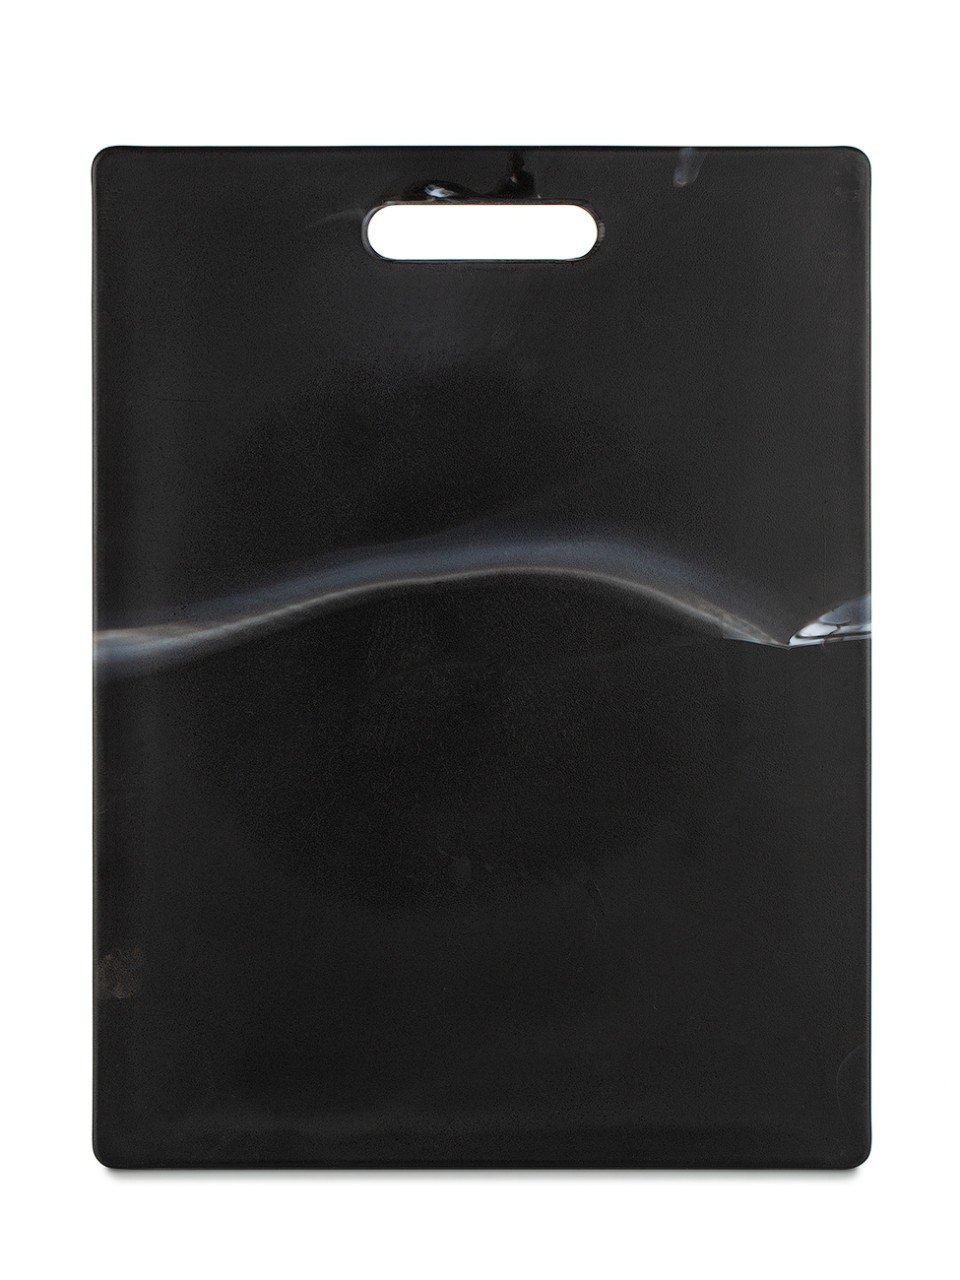 Доска разделочная пластик 27,5*36,5 MARBLE Black ATTRIBUTE. Доска разделочная пластик 27,5*36,5 MARBLE Black ATTRIBUTE Разделочная доска GRANITE выполнена из высококачественного пластика, подходит для различных видов продуктов, не впитывает запахи.  Доска устойчива к порезам, не затупляет ножи, имеет двухстороннюю рабочую поверхность, обладает удобной ручкой. Можно мыть в посудомоечной машине.